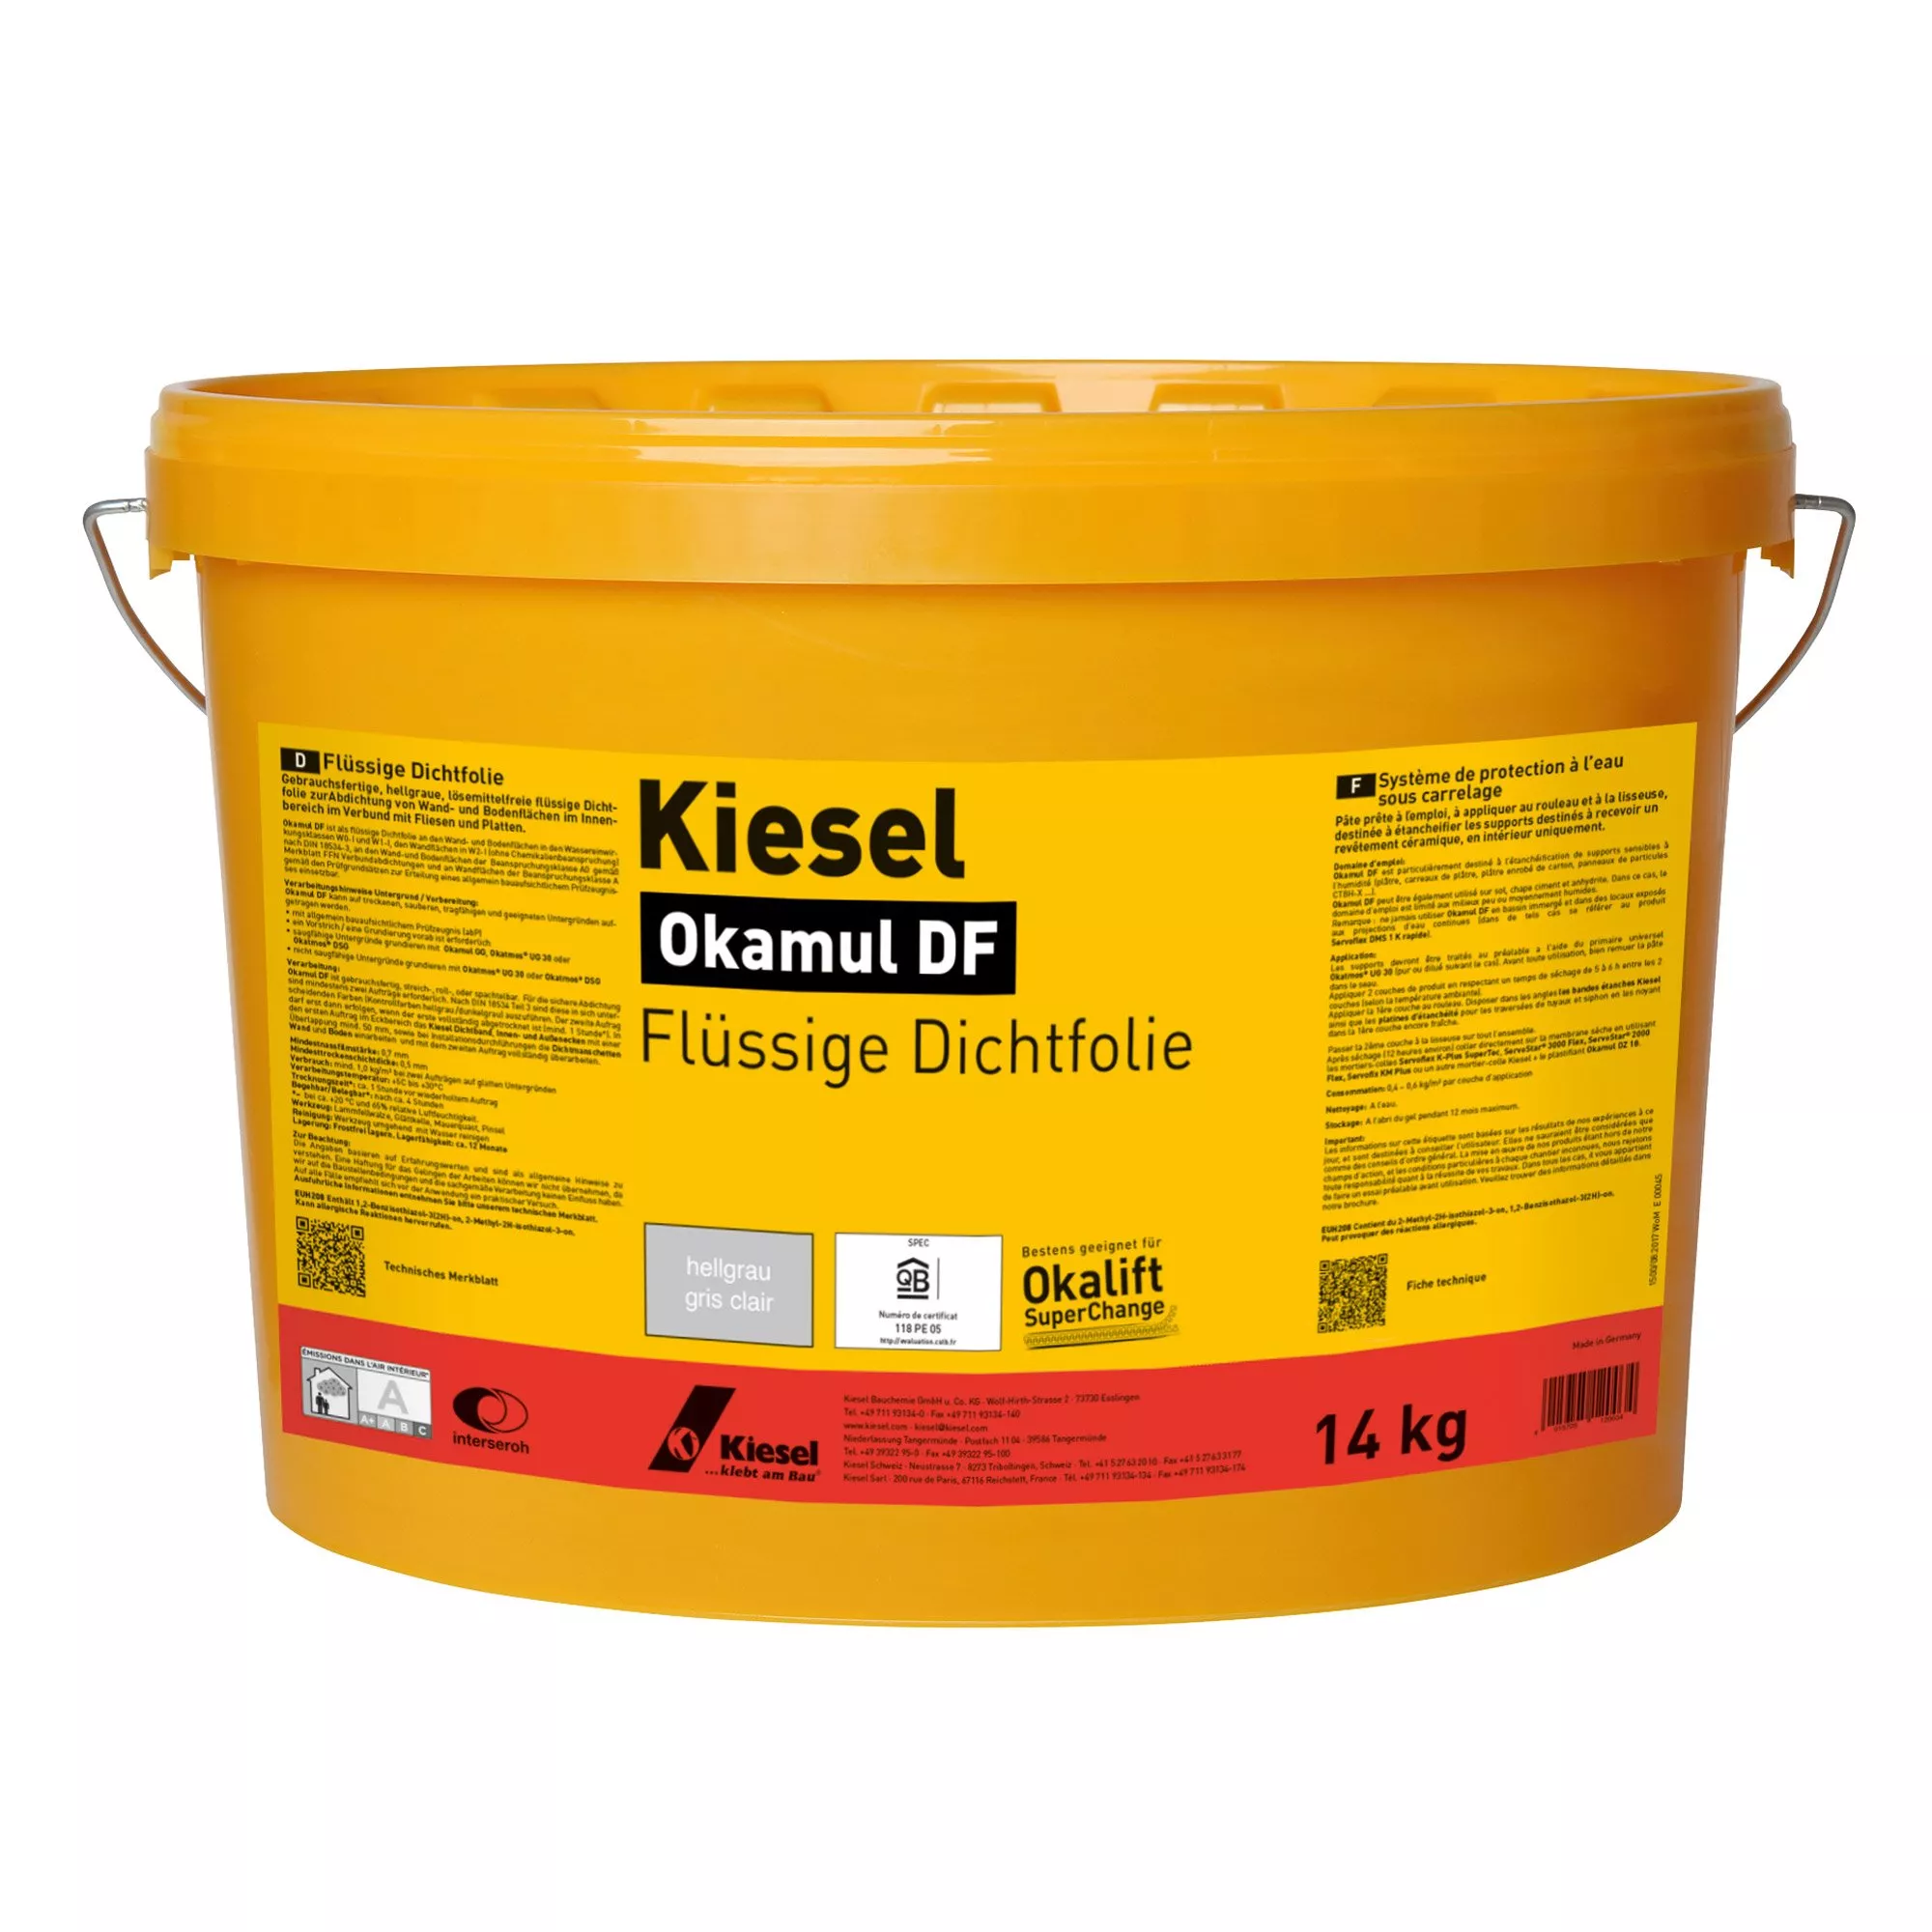 Kiesel Okamul DF - Filme selante líquido cinza claro (14KG)